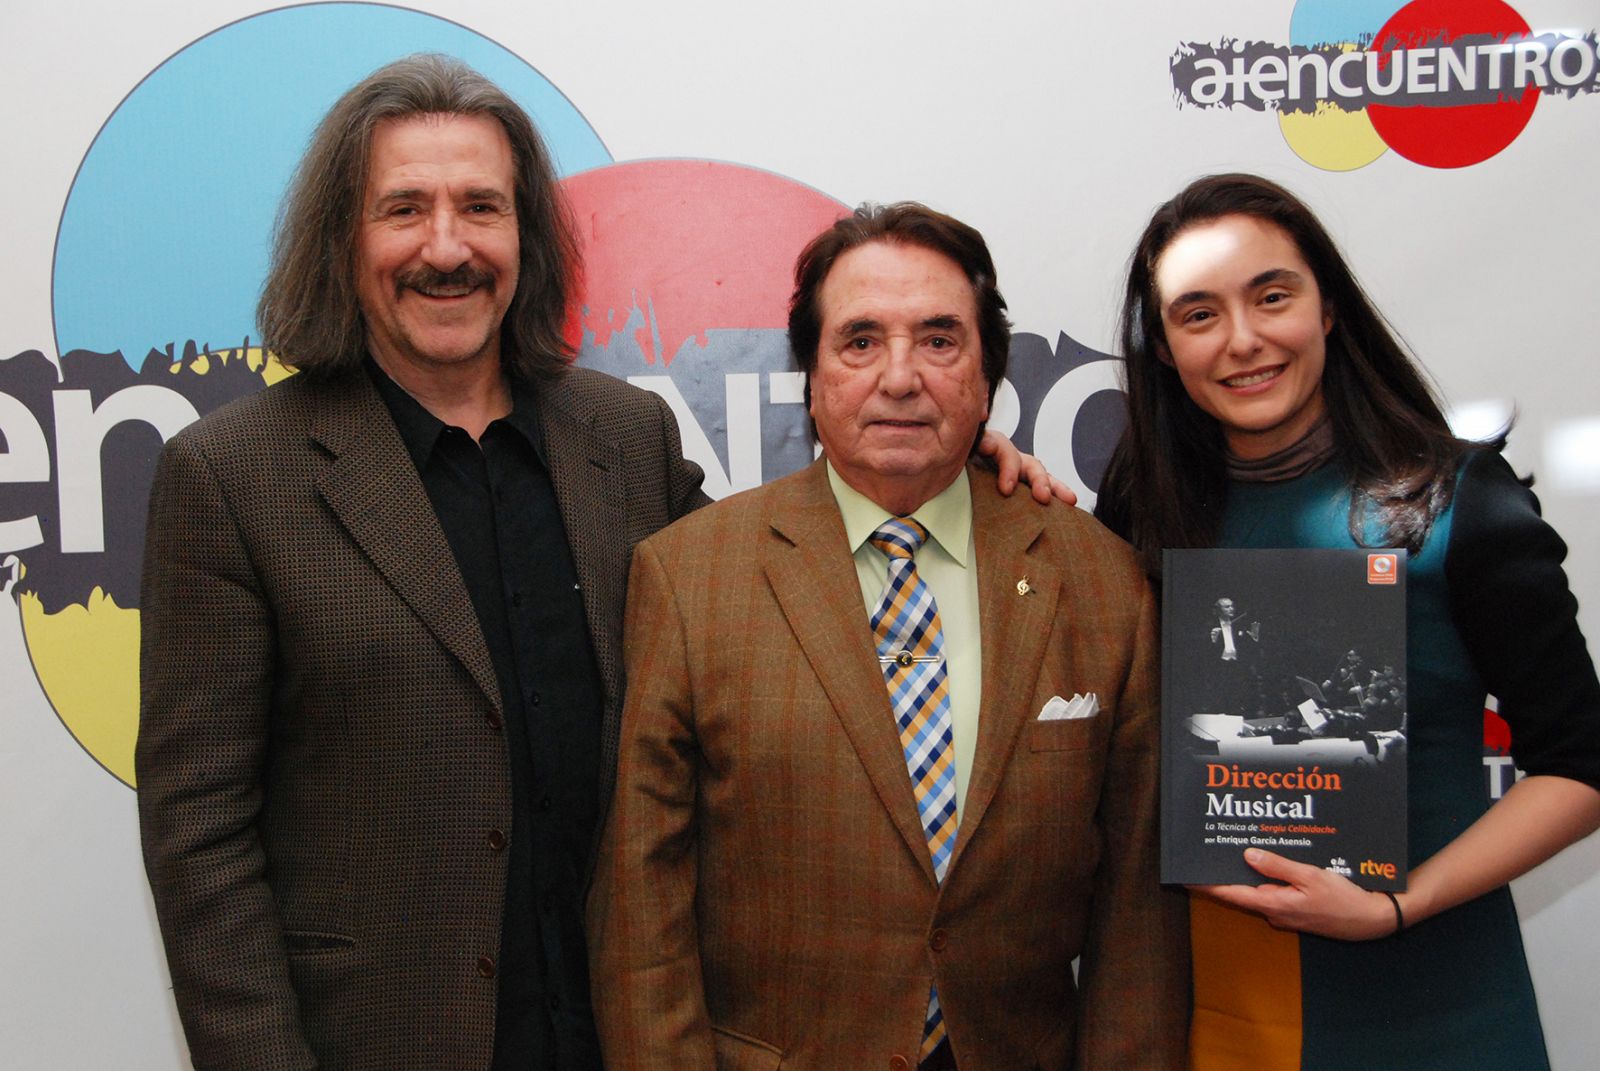 Luis Cobos, Enrique Gª Asensio y Mikaela Vergara, en la presentación del libro 'Dirección Musical'